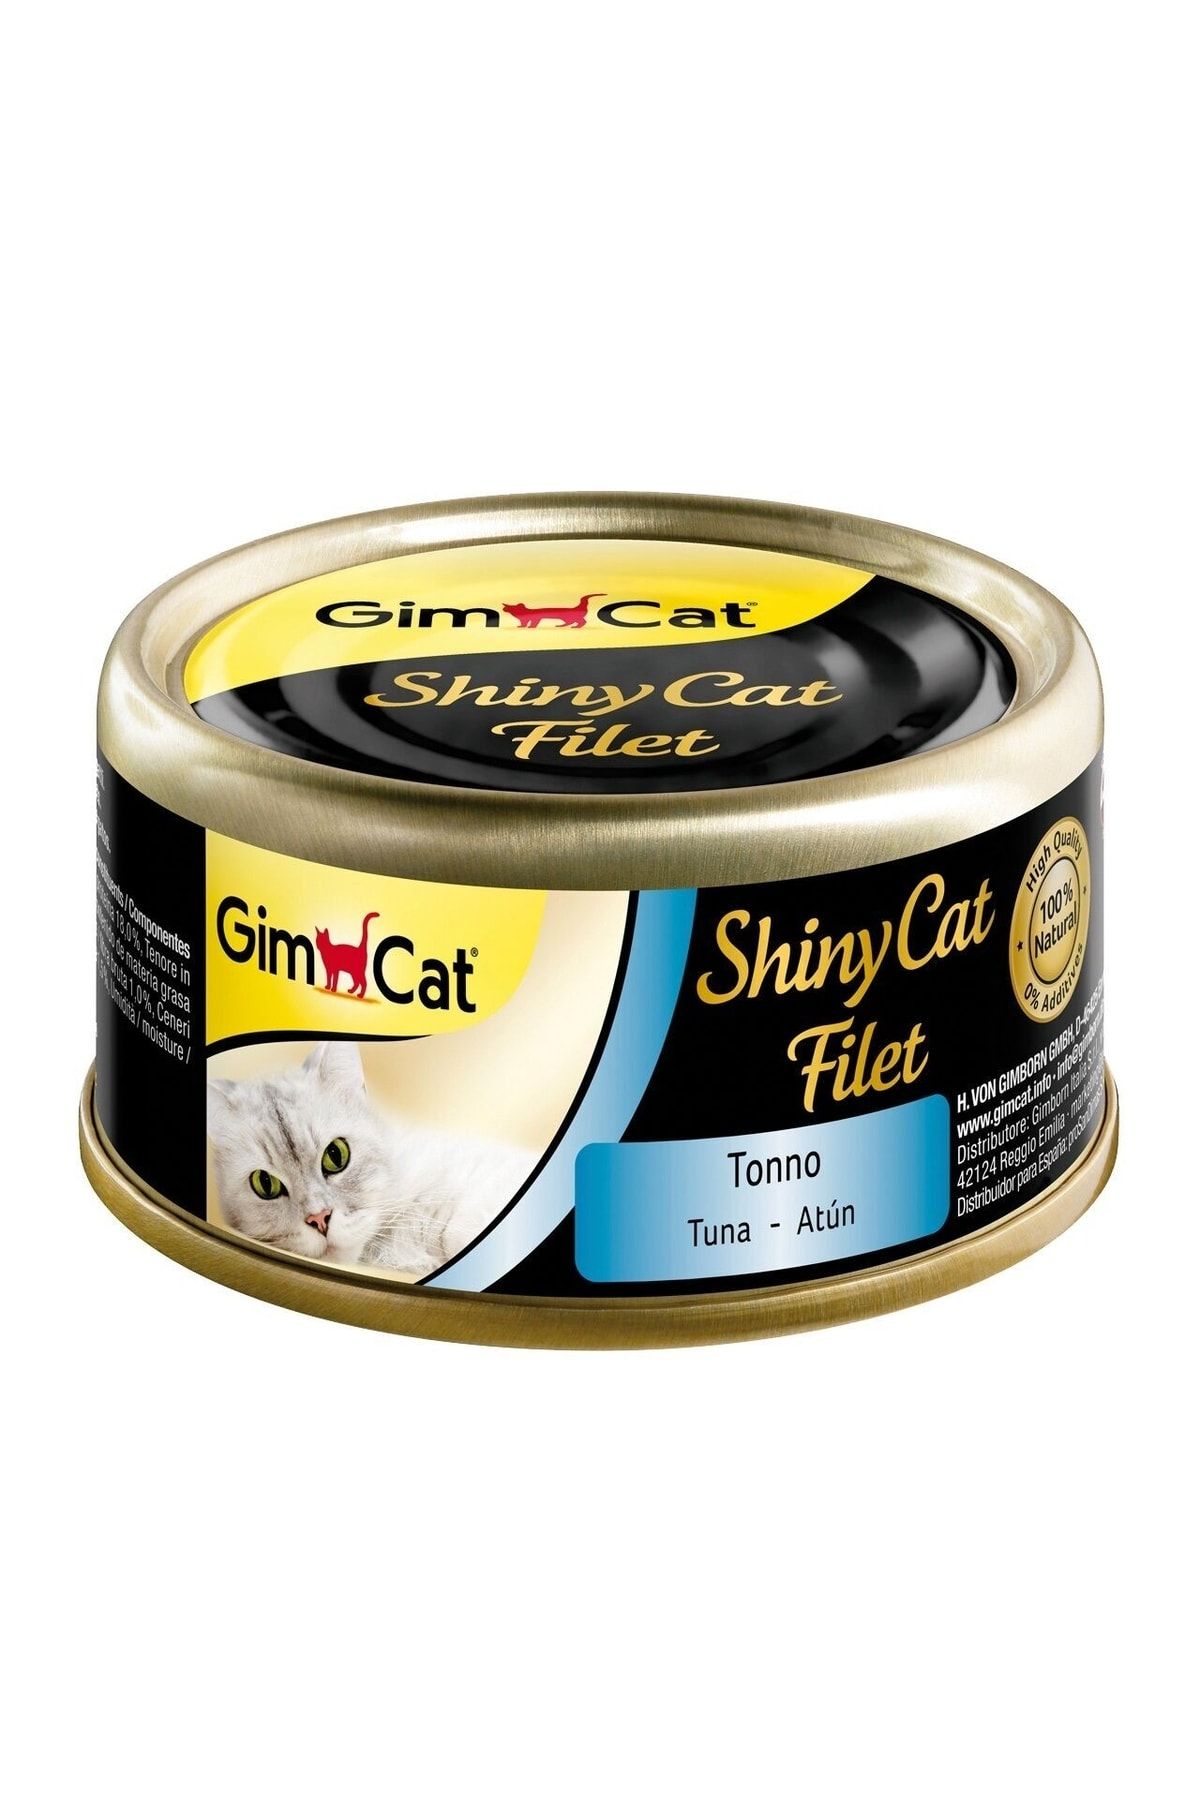 Gimcat Shinycat Kıyılmış Fileto Tuna Balıklı Yetişkin Kedi Konservesi 70 Gr